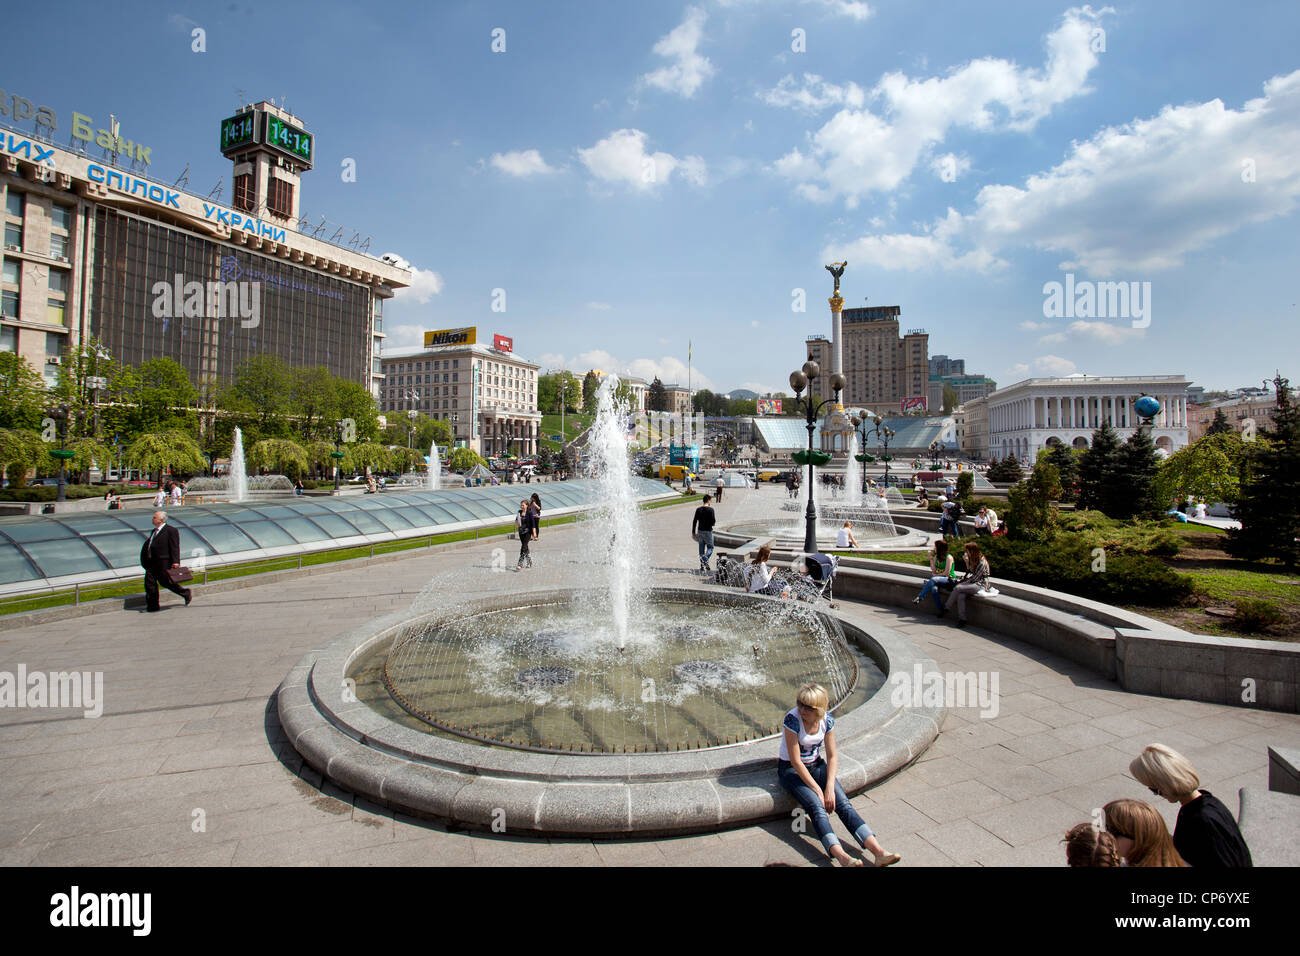 Independence Square in Kiev, Ukraine. Stock Photo